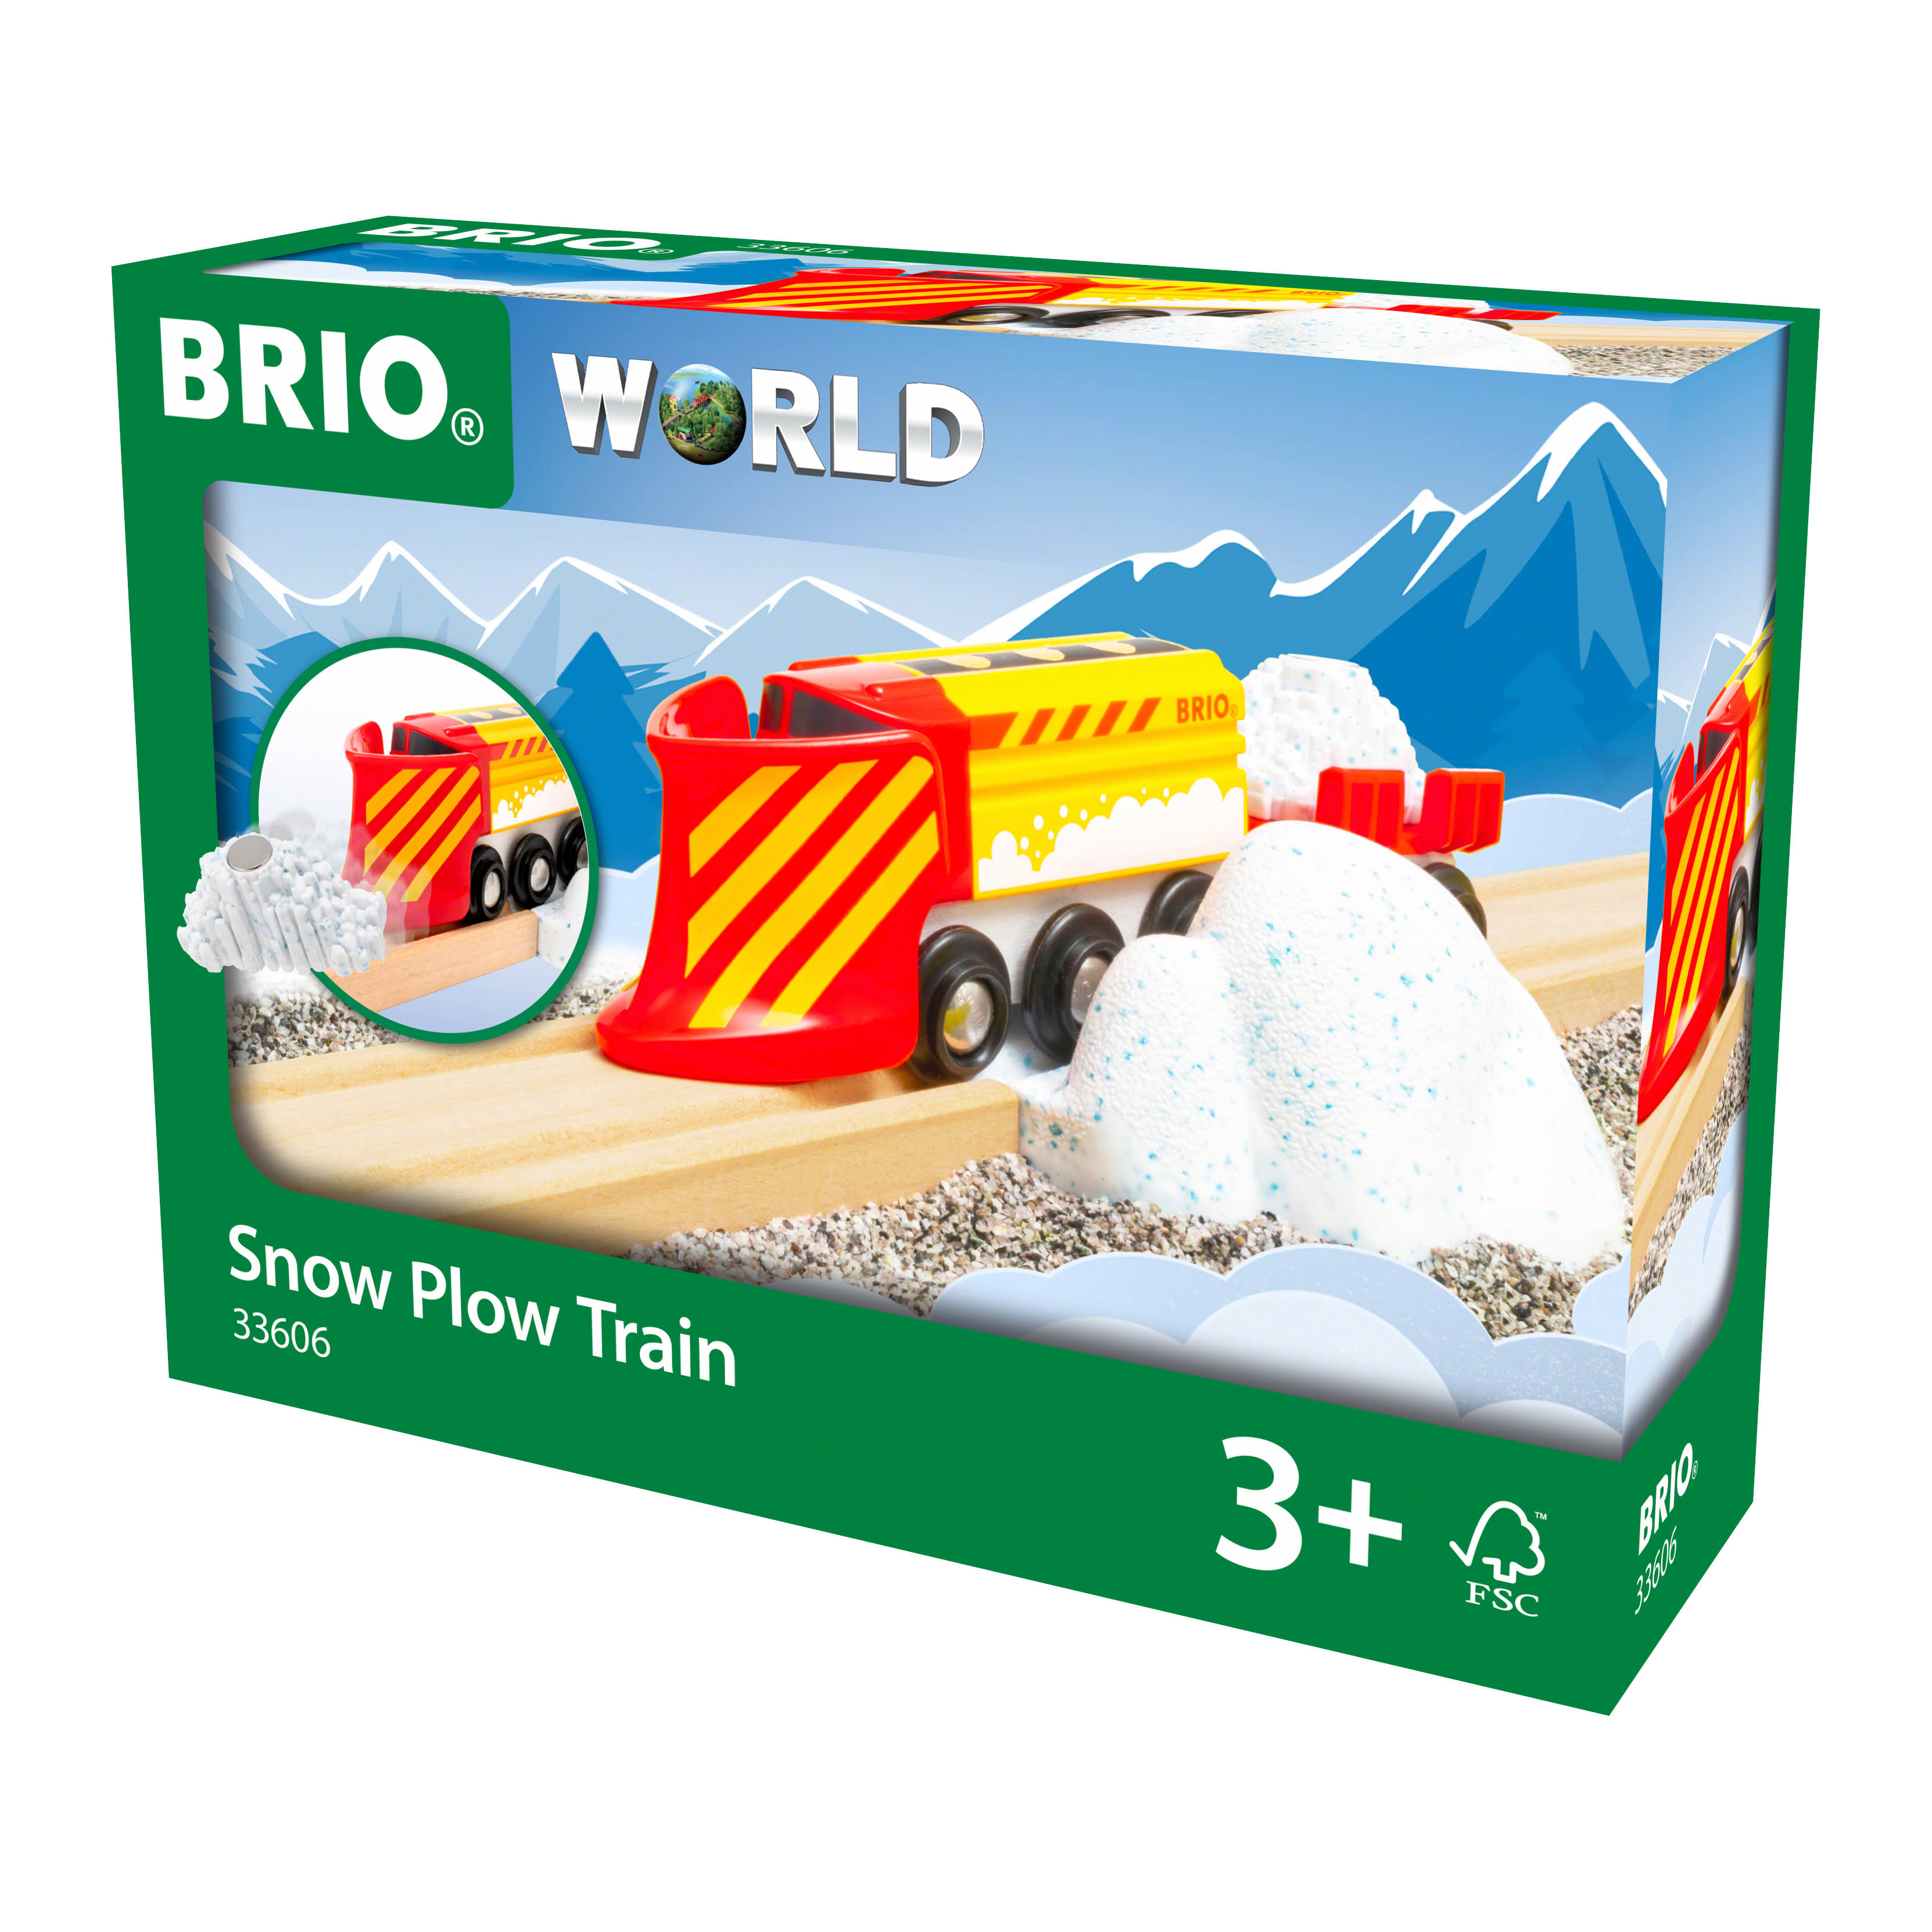 BRIO 33606 BRIO Snow Plow Train